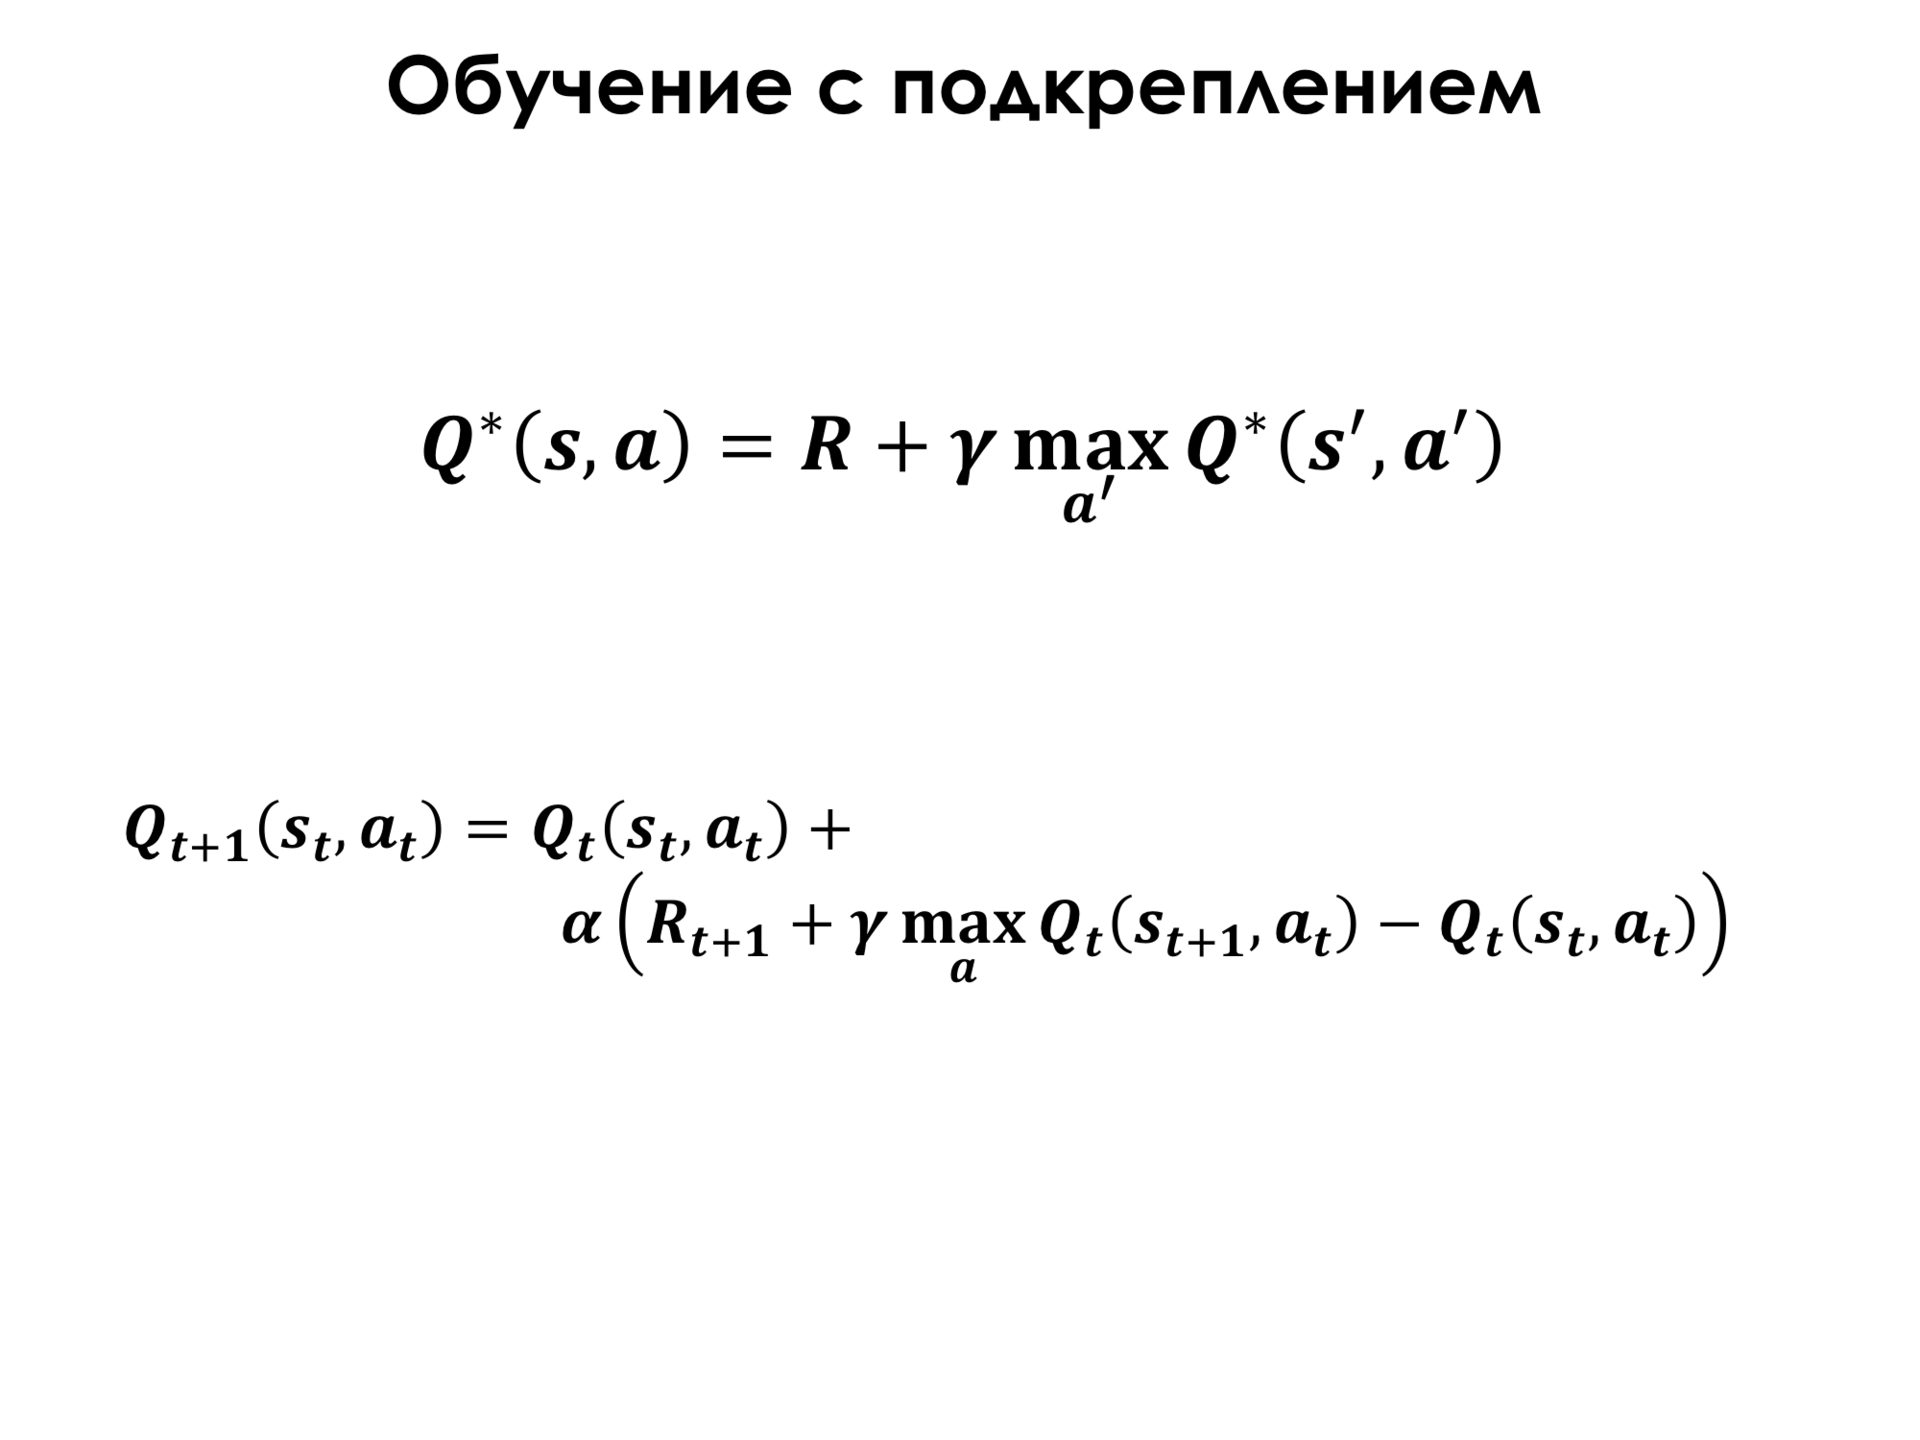 Самое главное о нейронных сетях. Лекция в Яндексе - 47